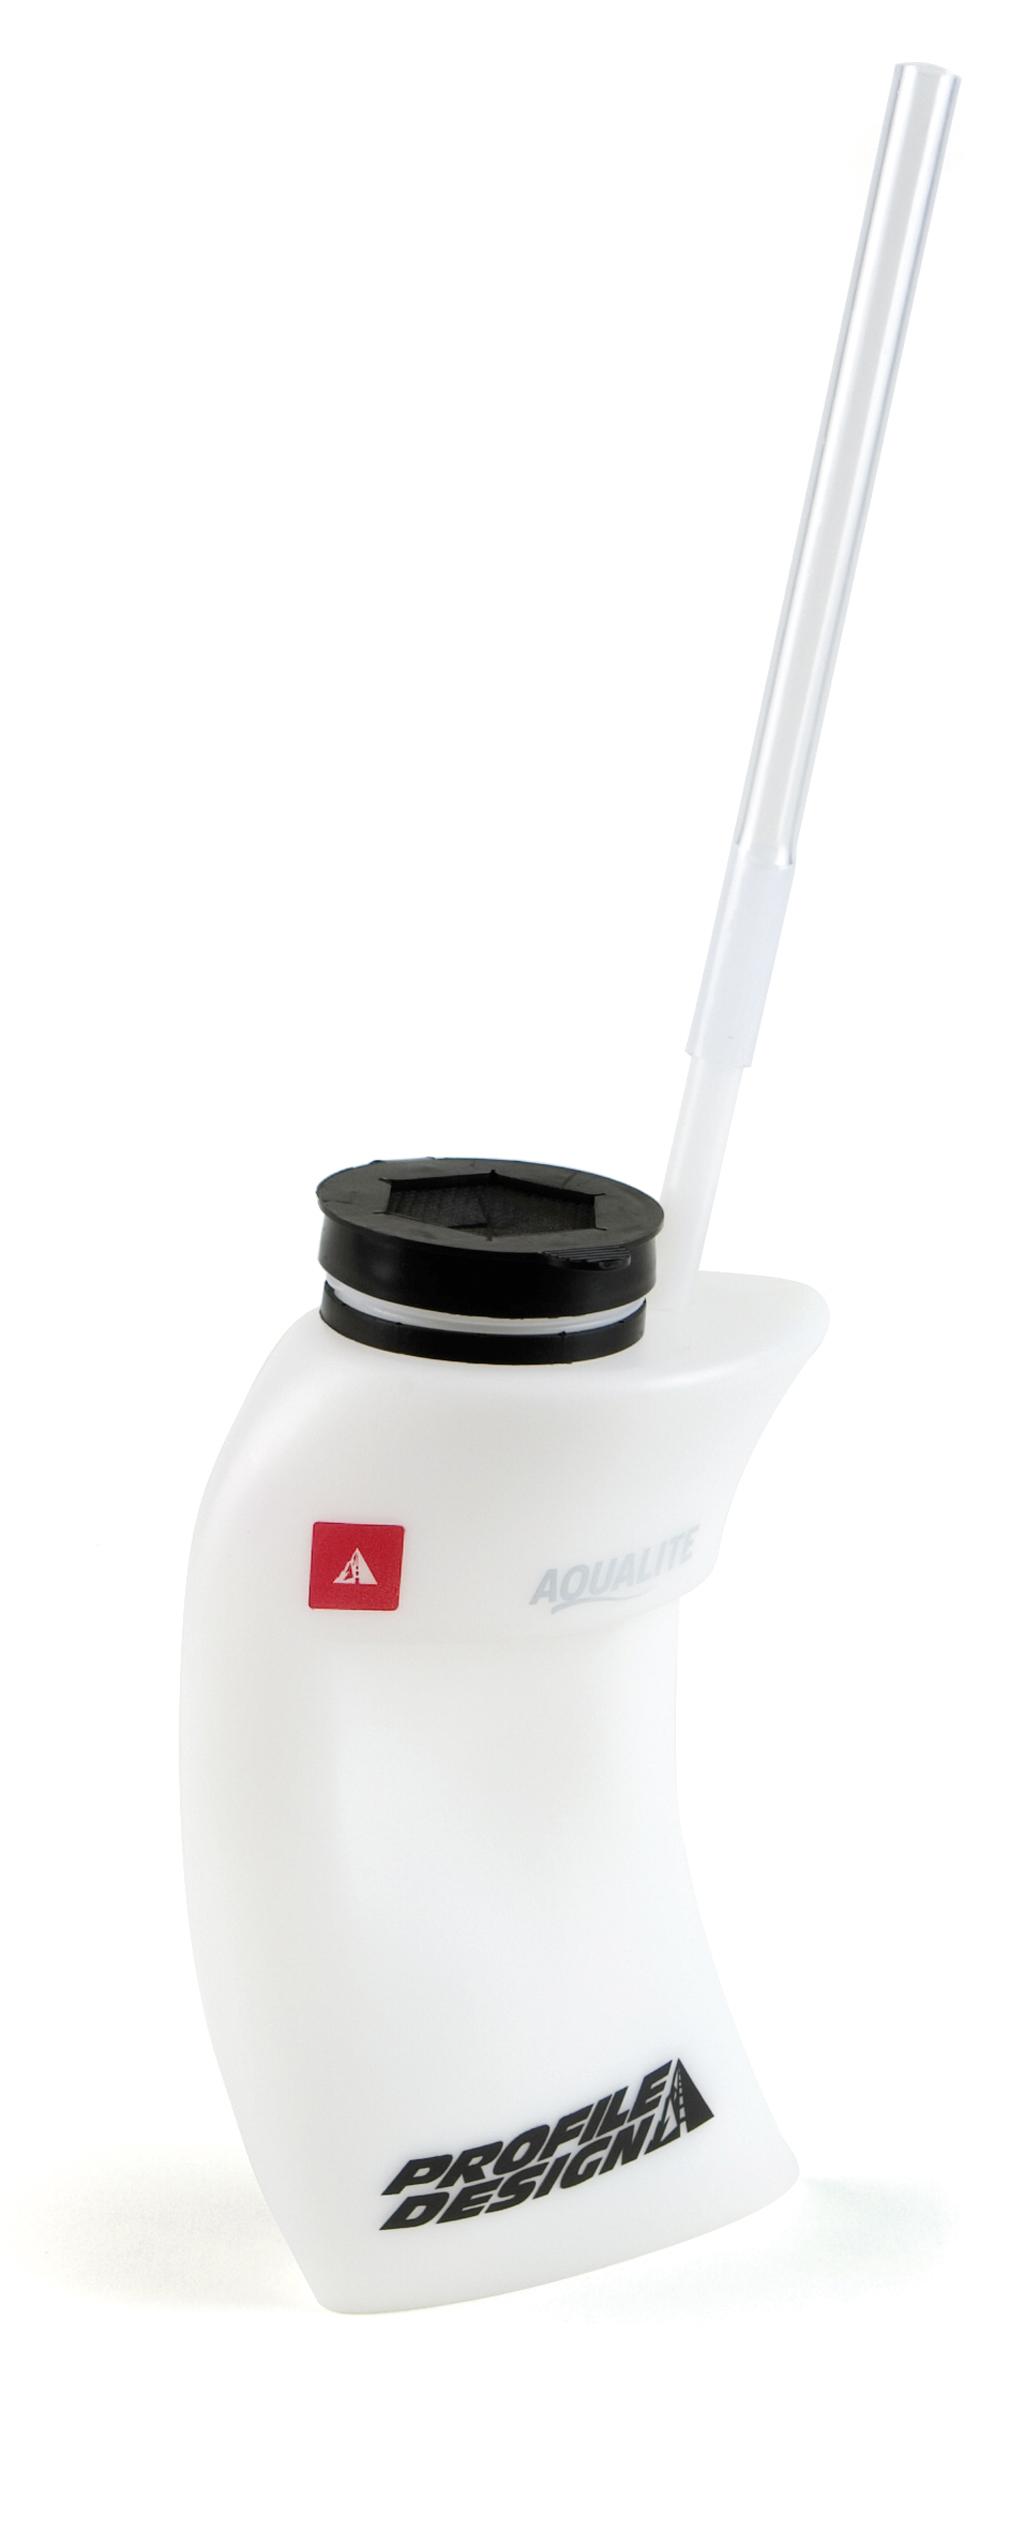 Foto Profile Design Aqualite Sistema de hidratación para Aeromanubrio, ...